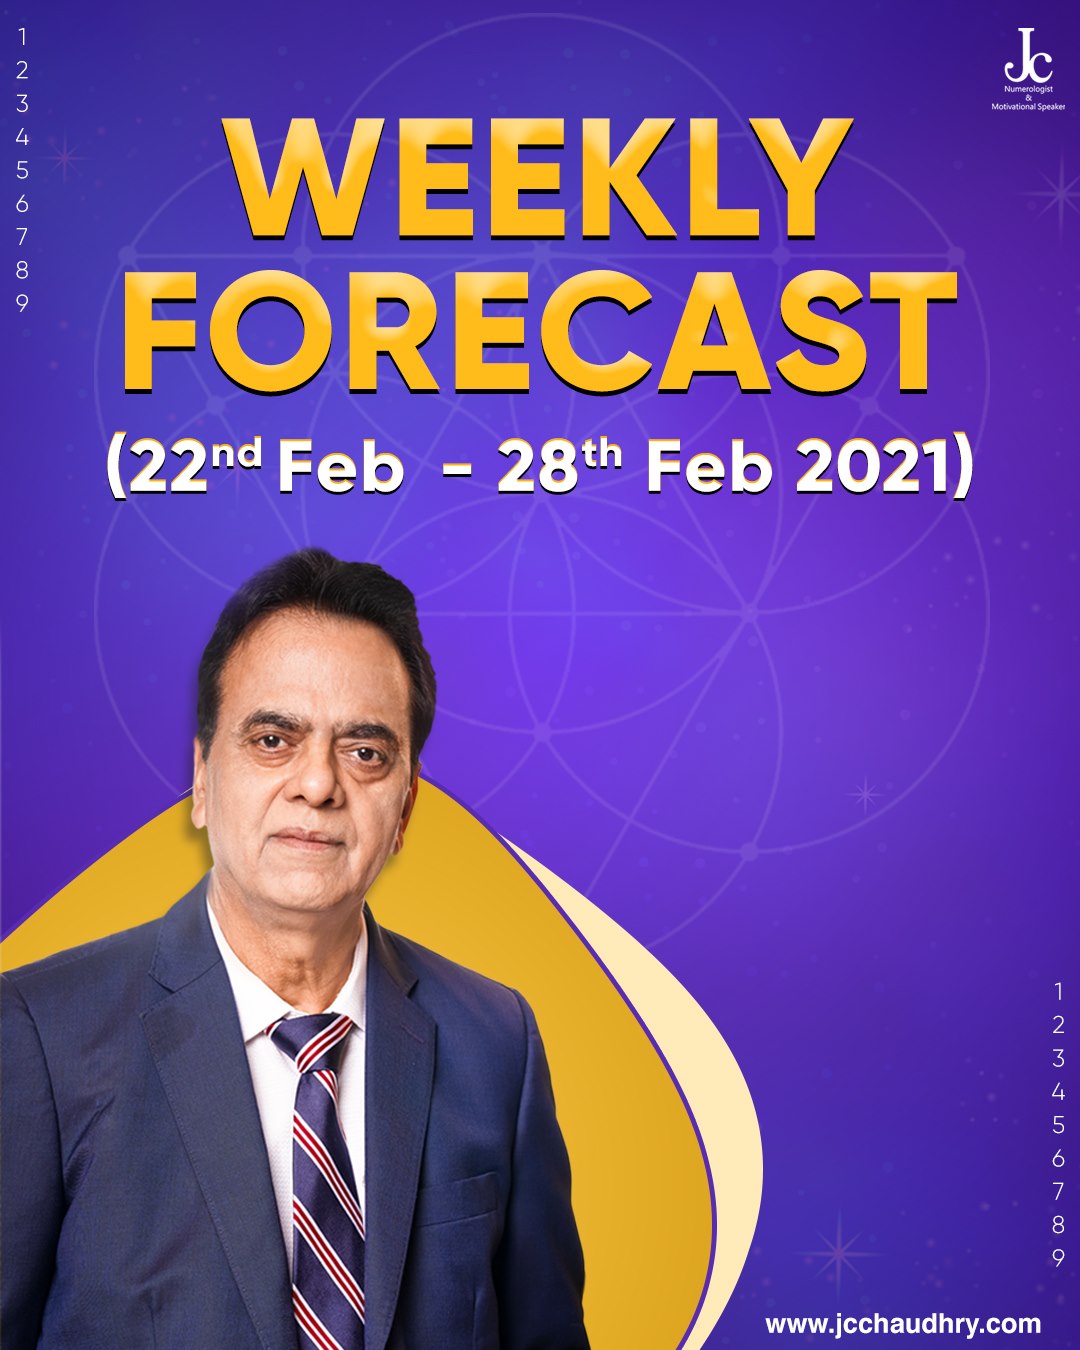 Weekly Forecast - Feb 22 - Feb 28, 2021